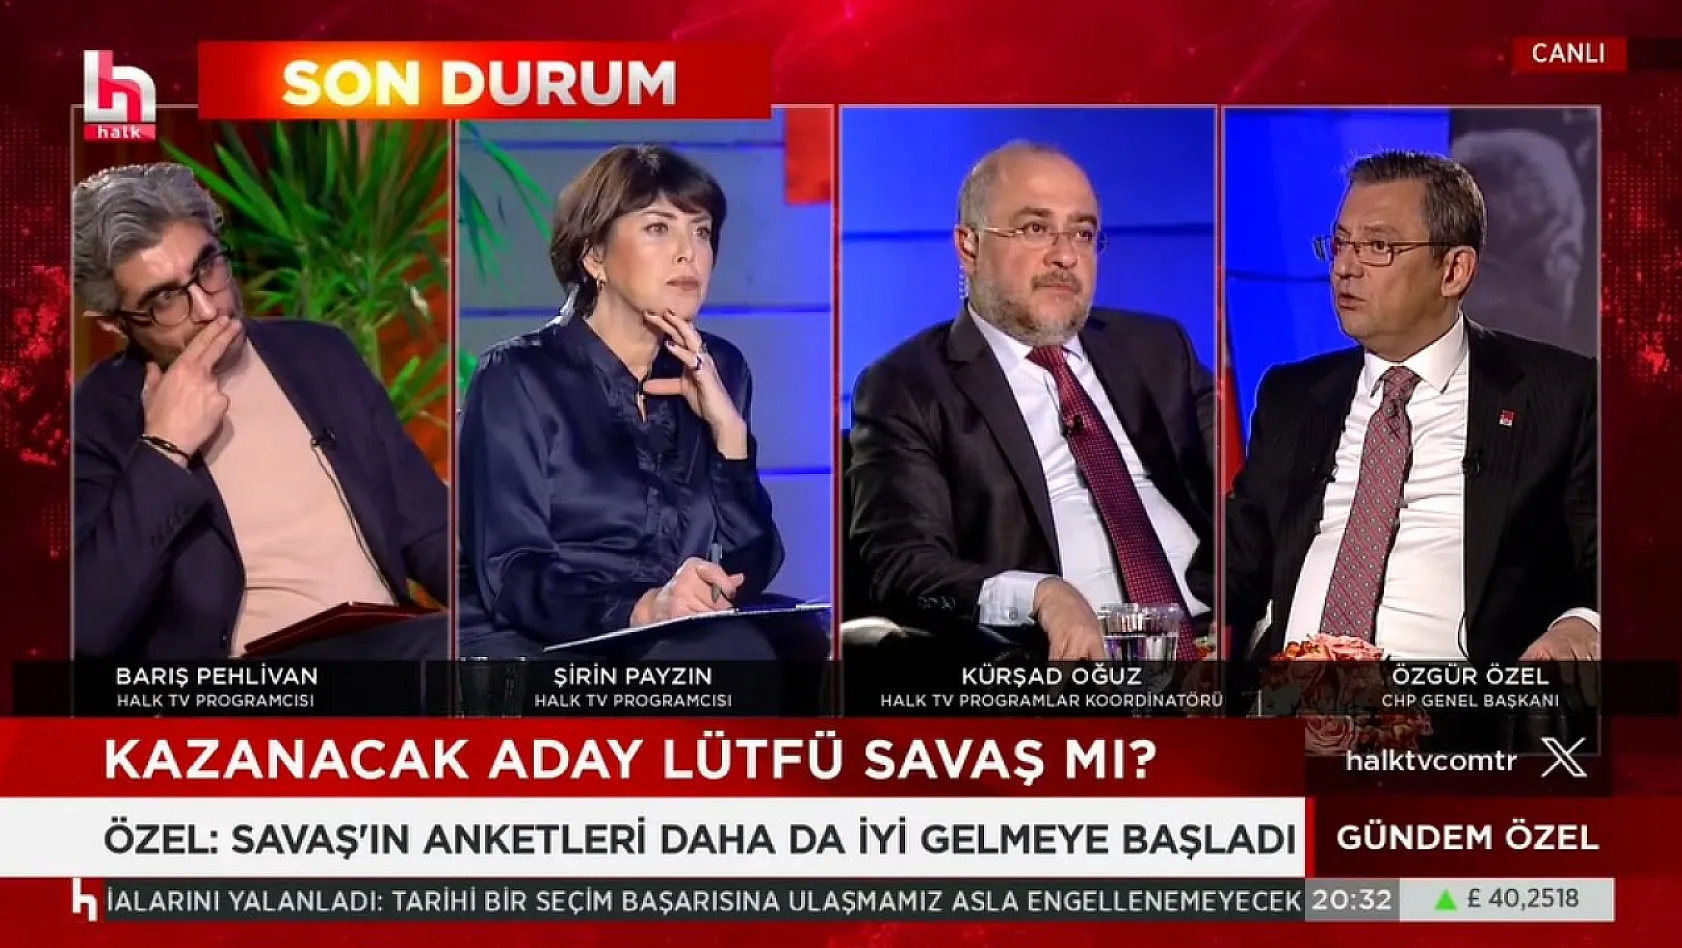 CHP Genel Başkanı Özel: Kayseri'de iddialıyız, dedi ama...